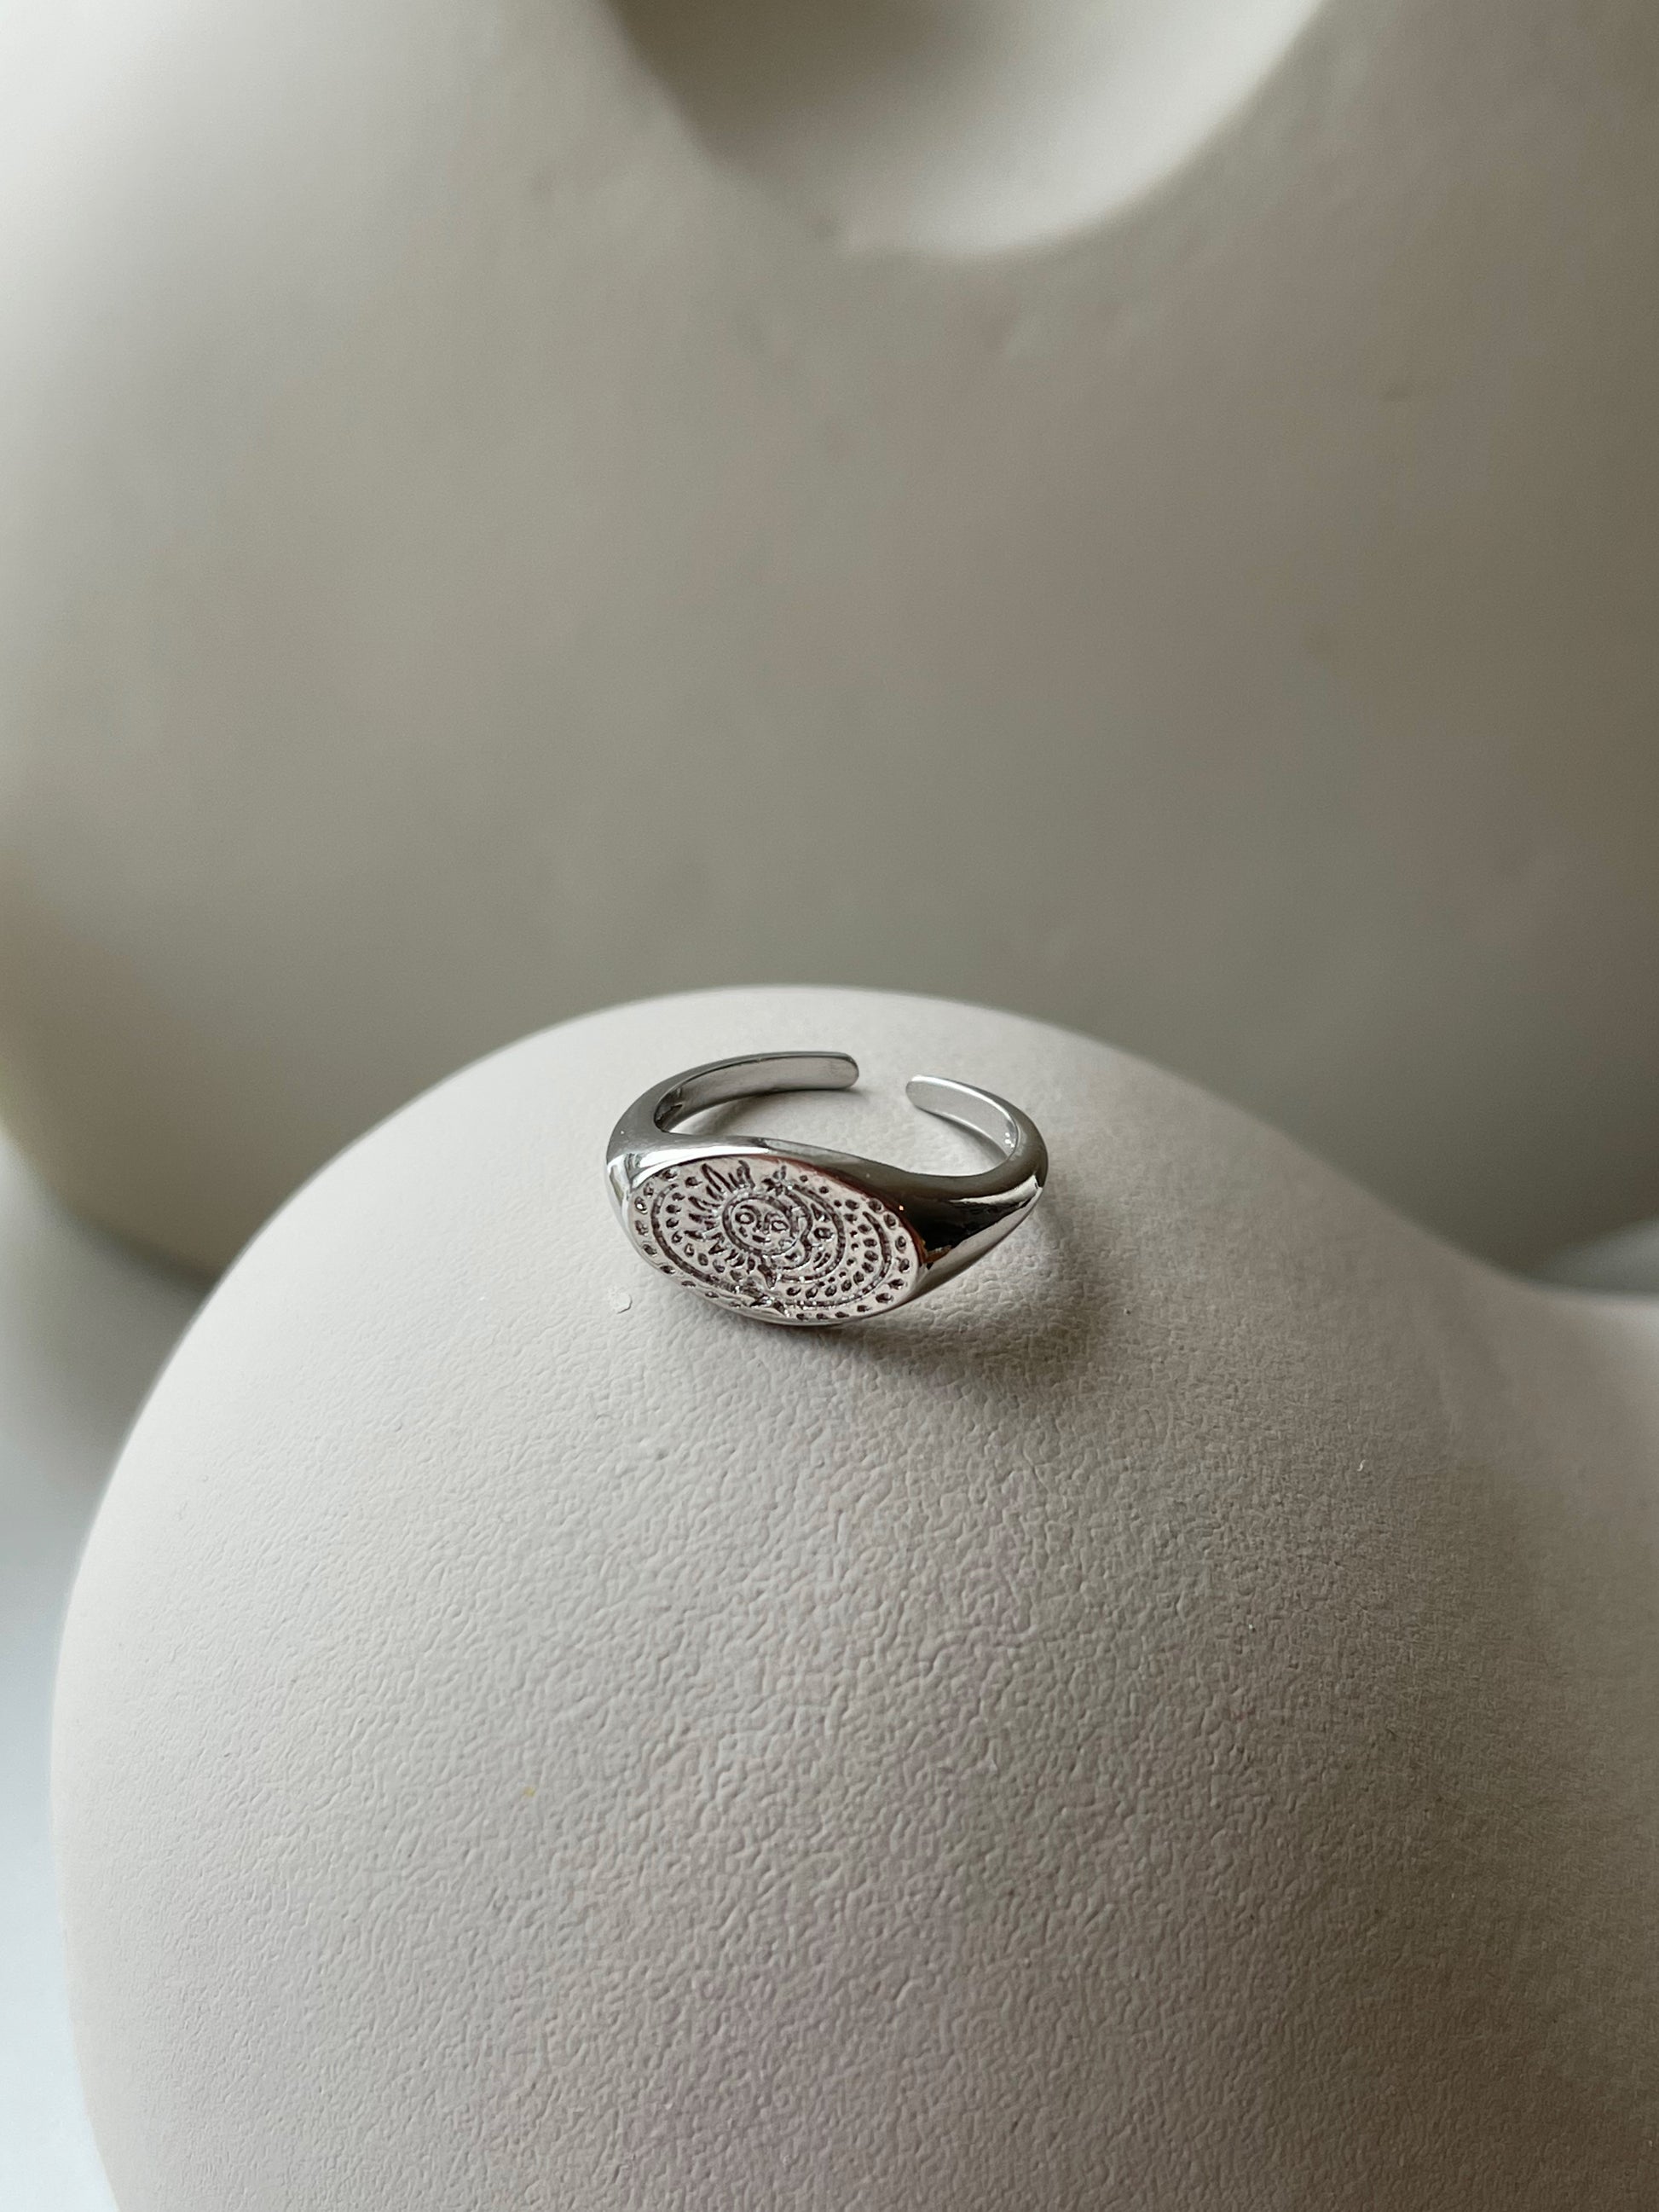 Anayah ring med sol og måne.  Denne smukke ring, er til dig som elsker, at spice dit look op med dine smykker.  Den kan sammensættes med andre ringe, for et mere råt look eller bruges alene for et mere enkelt og feminint look.   Materiale: 70% S925 sterling sølv, 30% rustfri stål, guldbelagt Størrelse: Justerbar